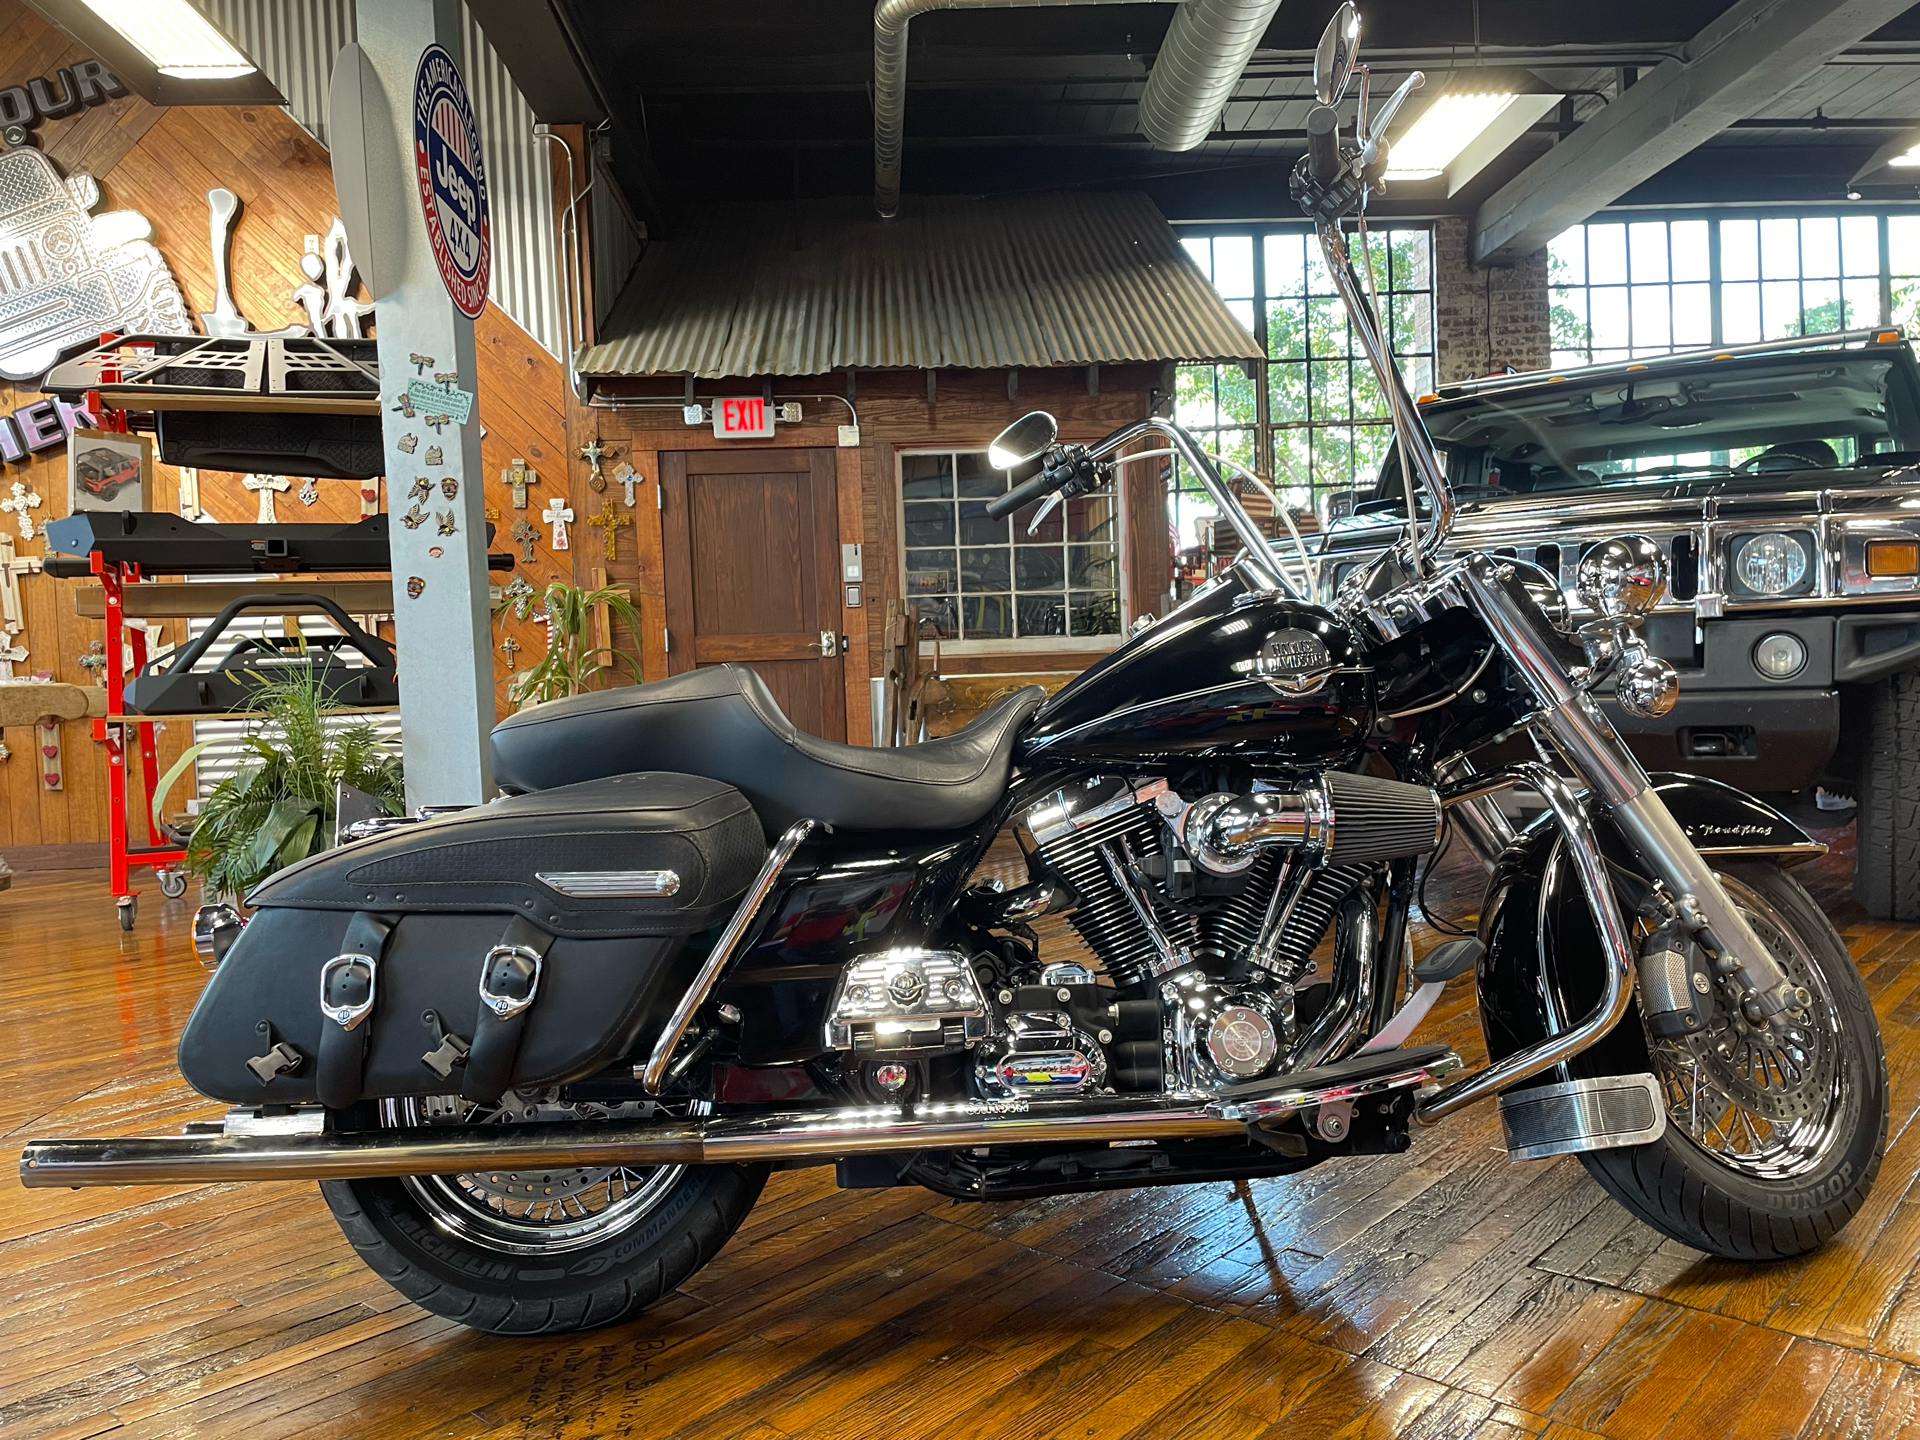 2008 Harley-Davidson Road King® in Laurel, Mississippi - Photo 1